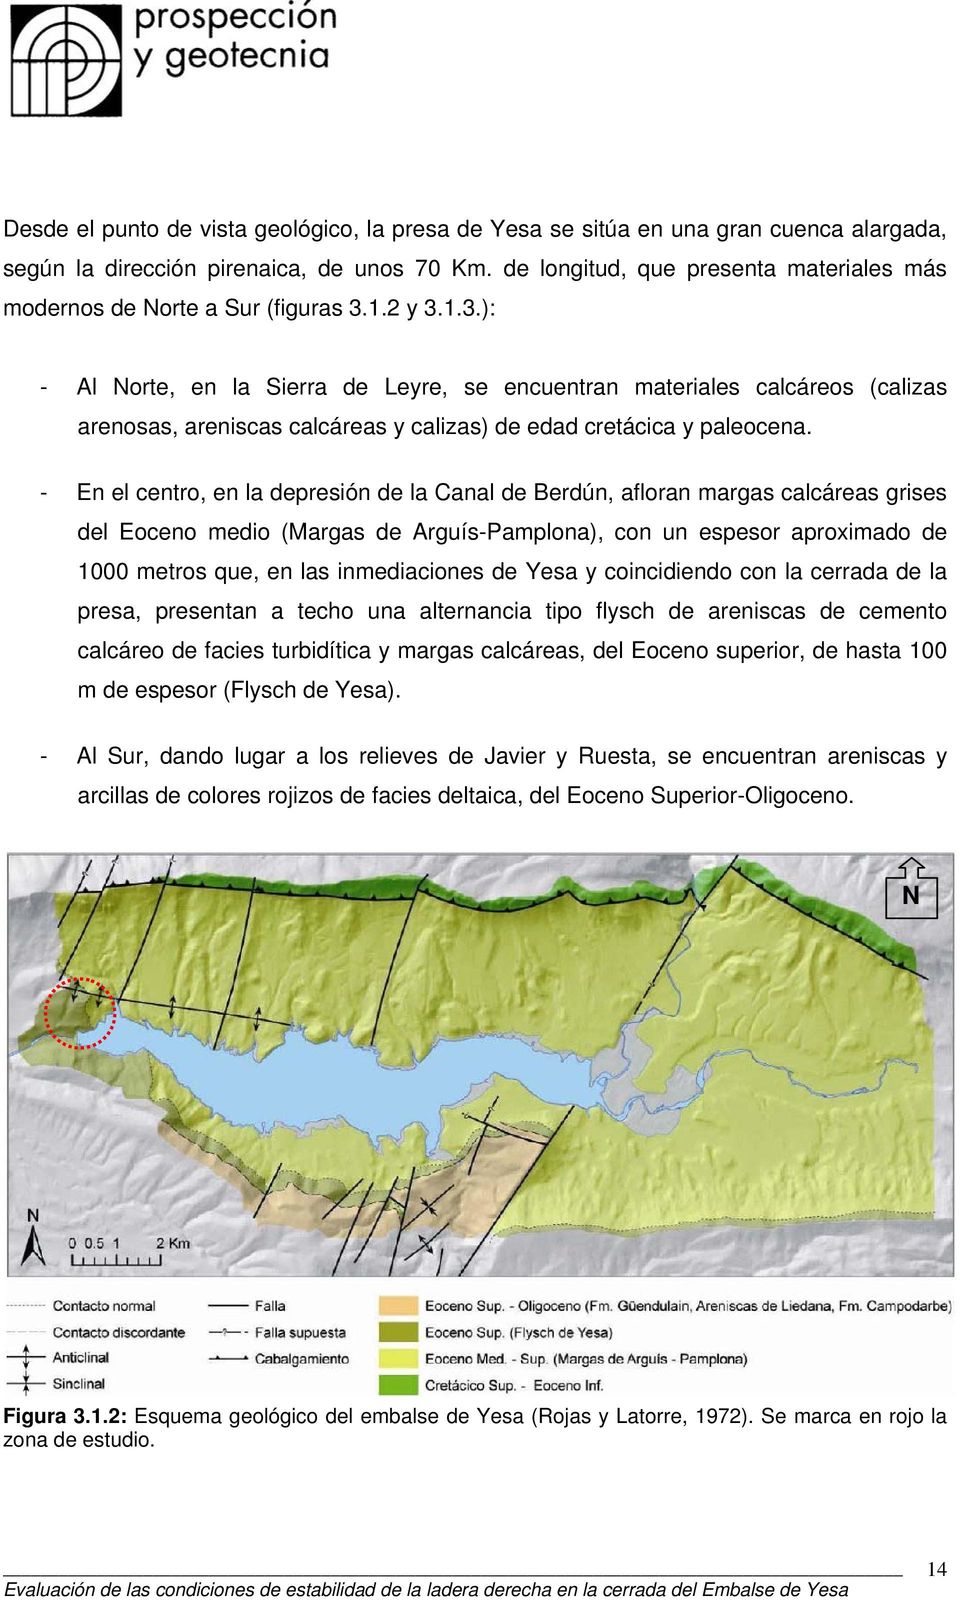 1.2 y 3.1.3.): - Al Norte, en la Sierra de Leyre, se encuentran materiales calcáreos (calizas arenosas, areniscas calcáreas y calizas) de edad cretácica y paleocena.